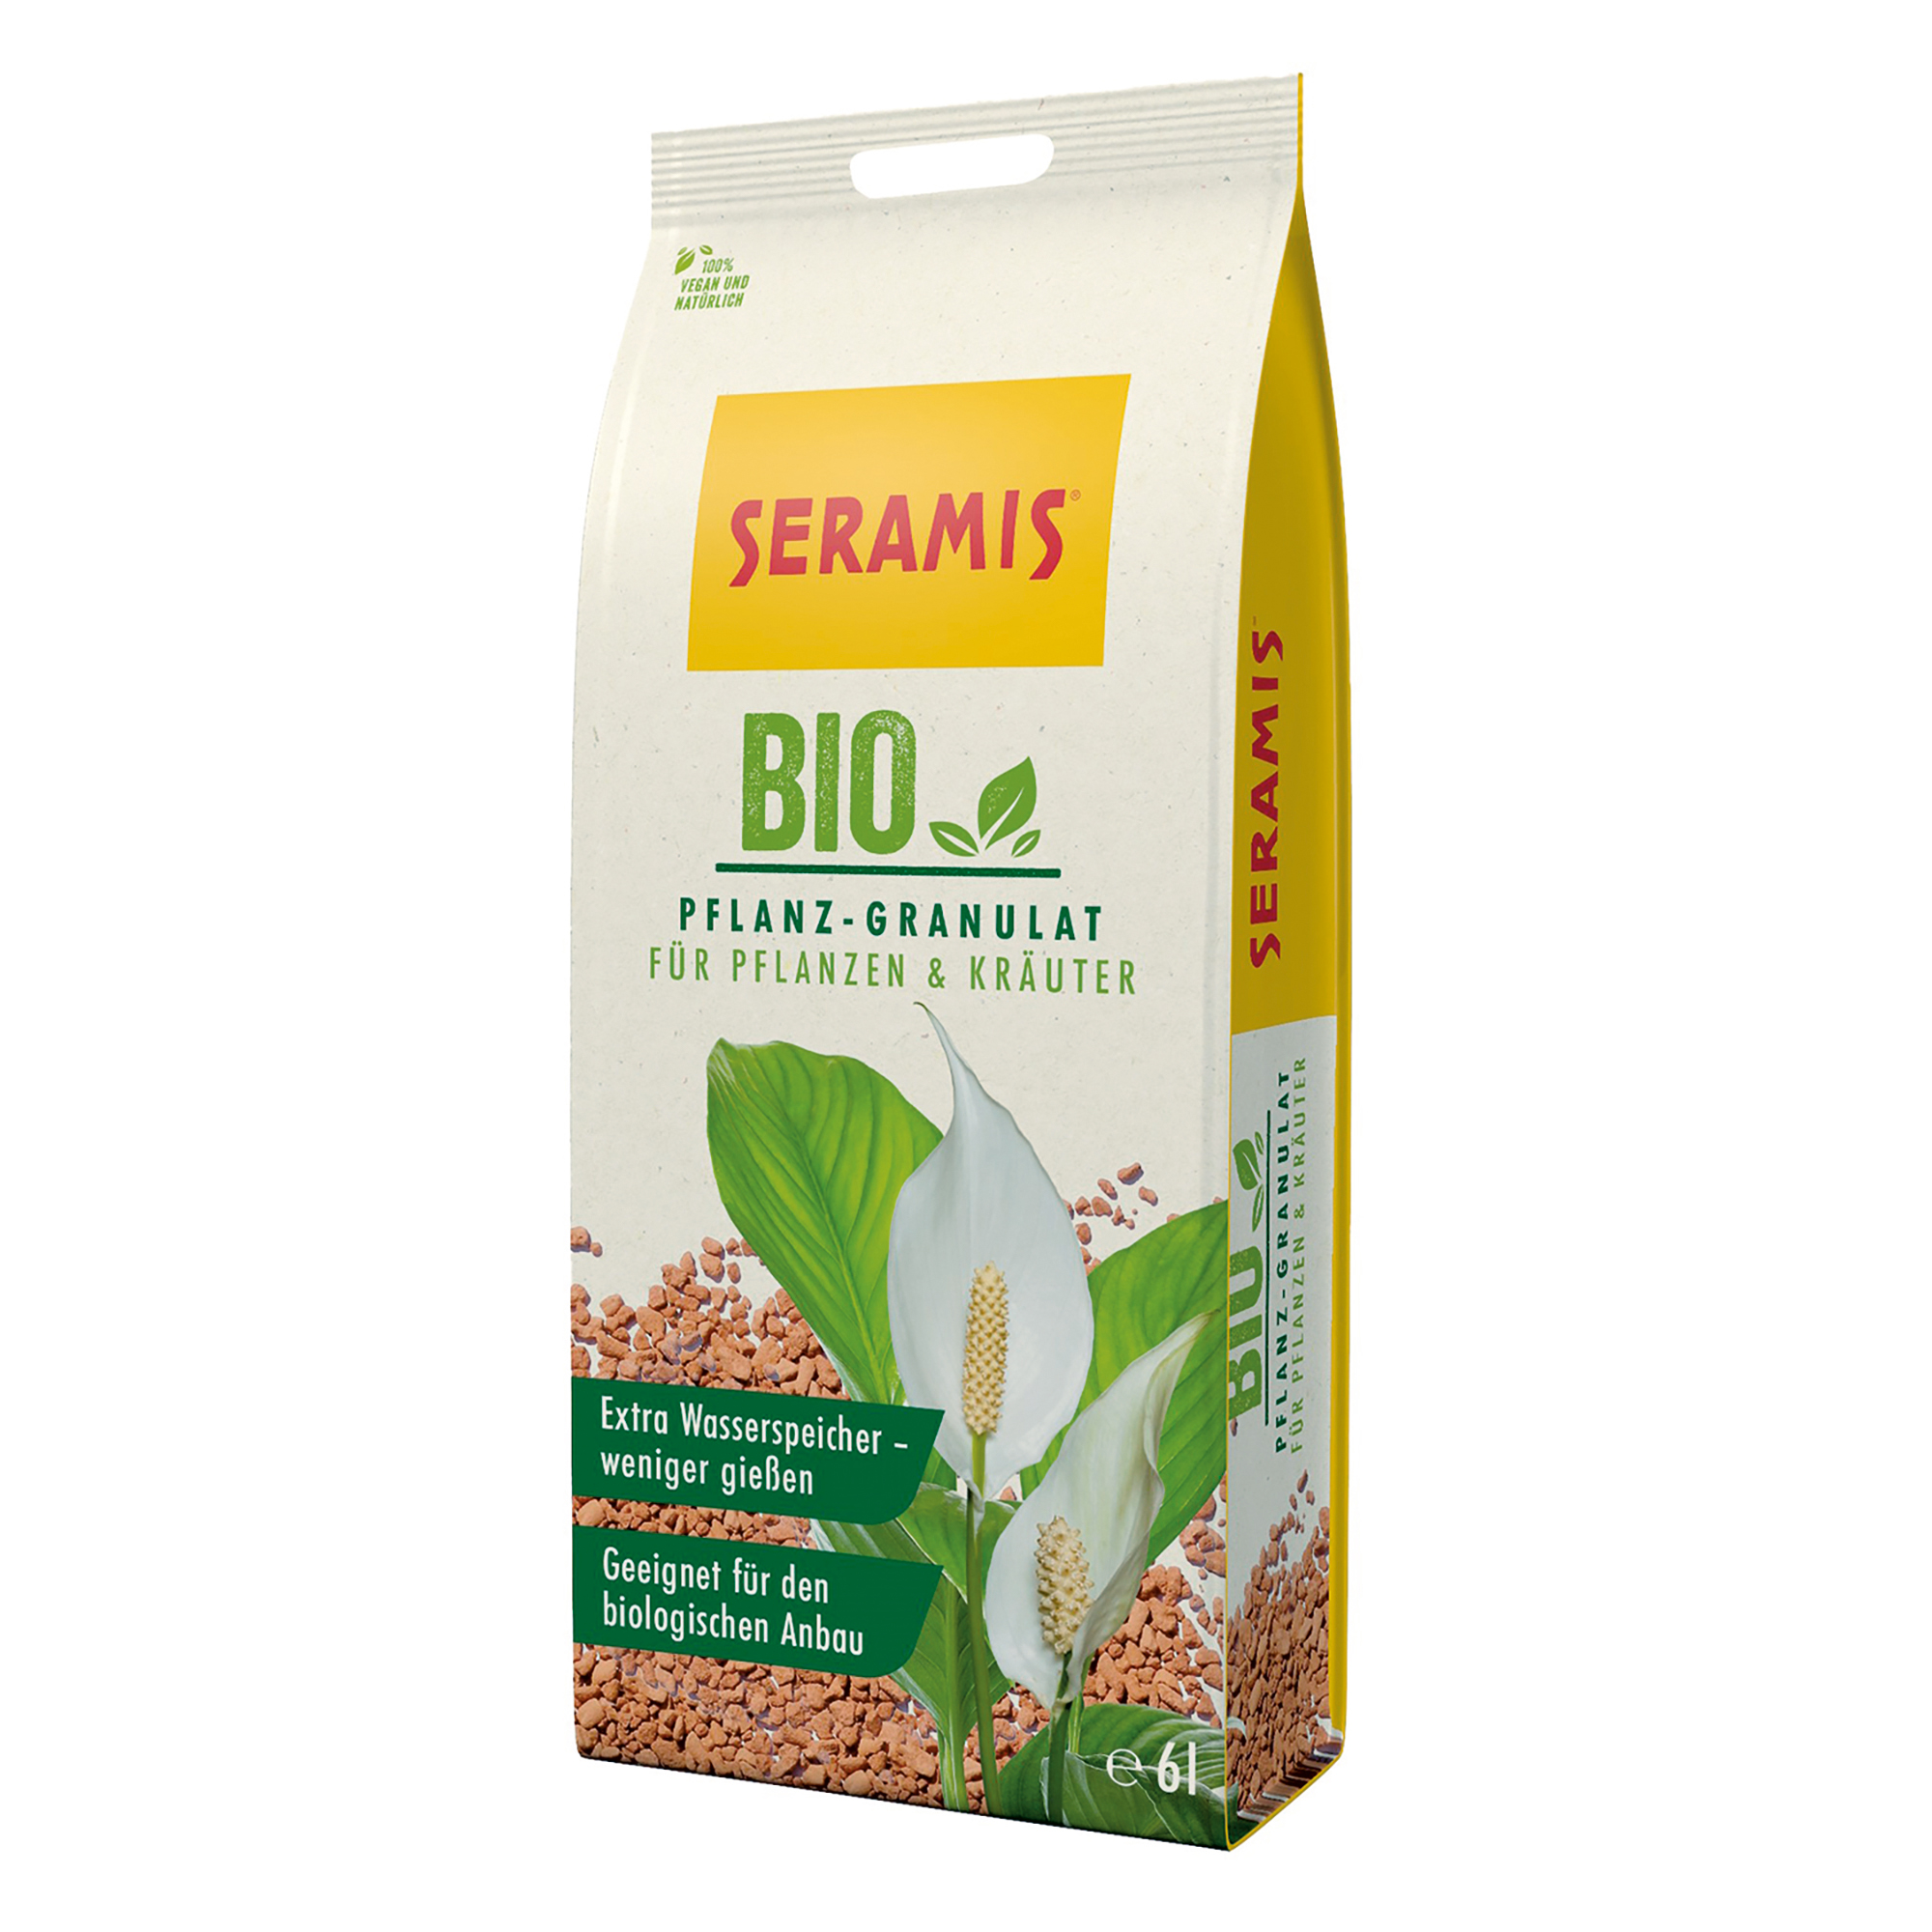 Bio-Pflanz-Granulat für Pflanzen und Kräuter 2,5 l + product picture